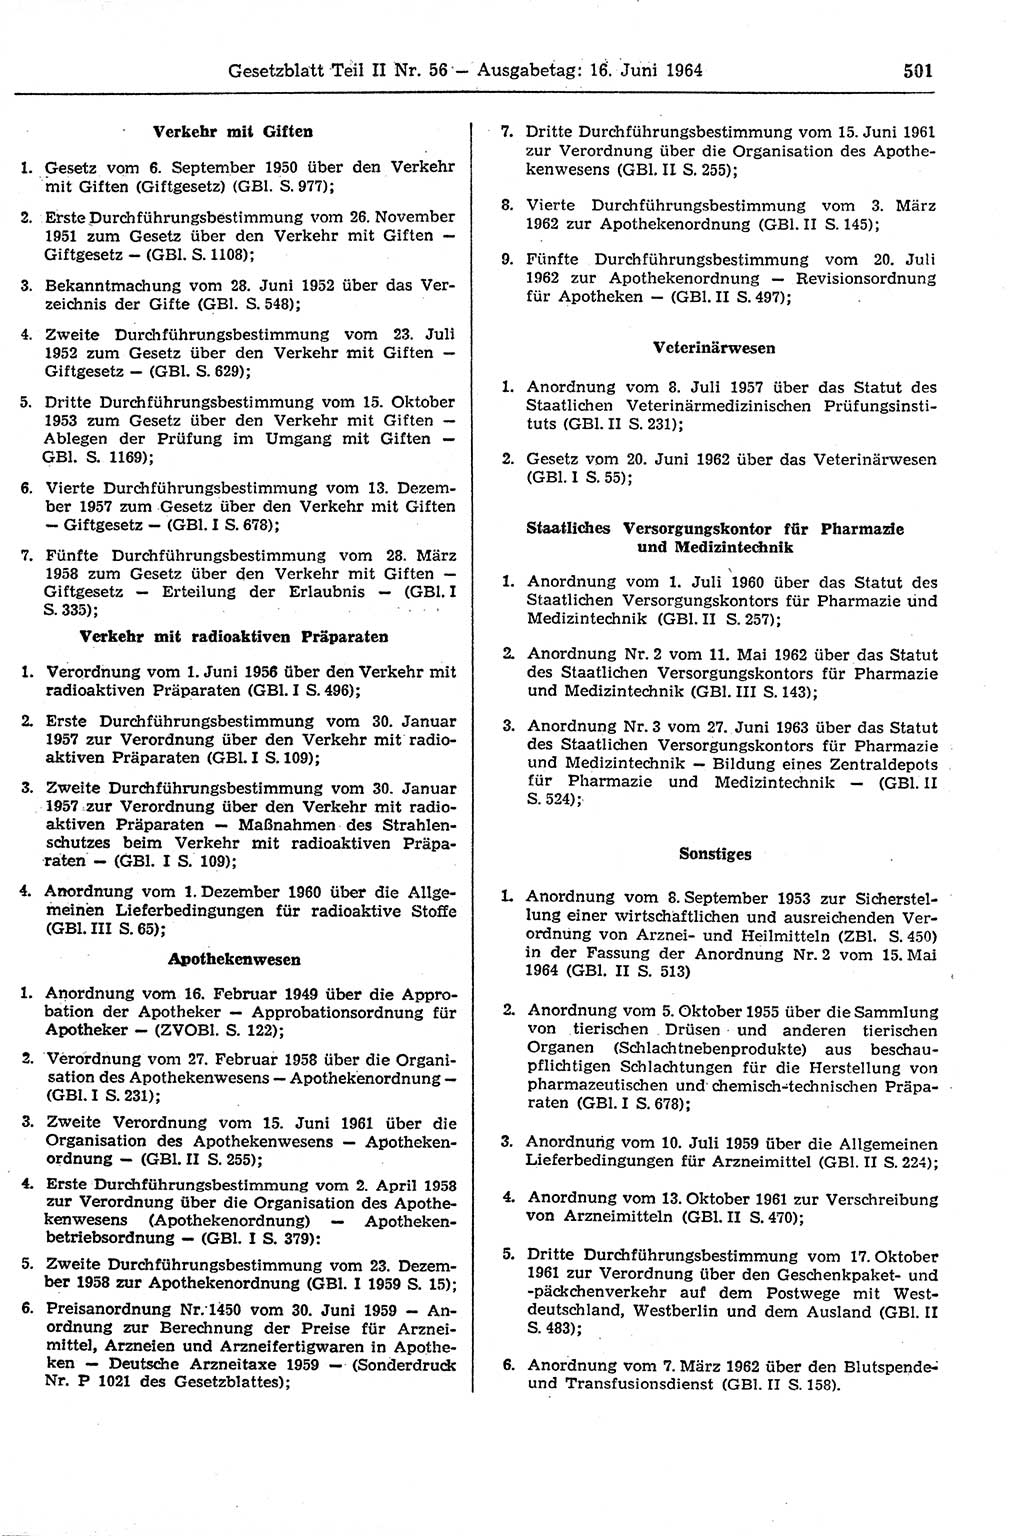 Gesetzblatt (GBl.) der Deutschen Demokratischen Republik (DDR) Teil ⅠⅠ 1964, Seite 501 (GBl. DDR ⅠⅠ 1964, S. 501)